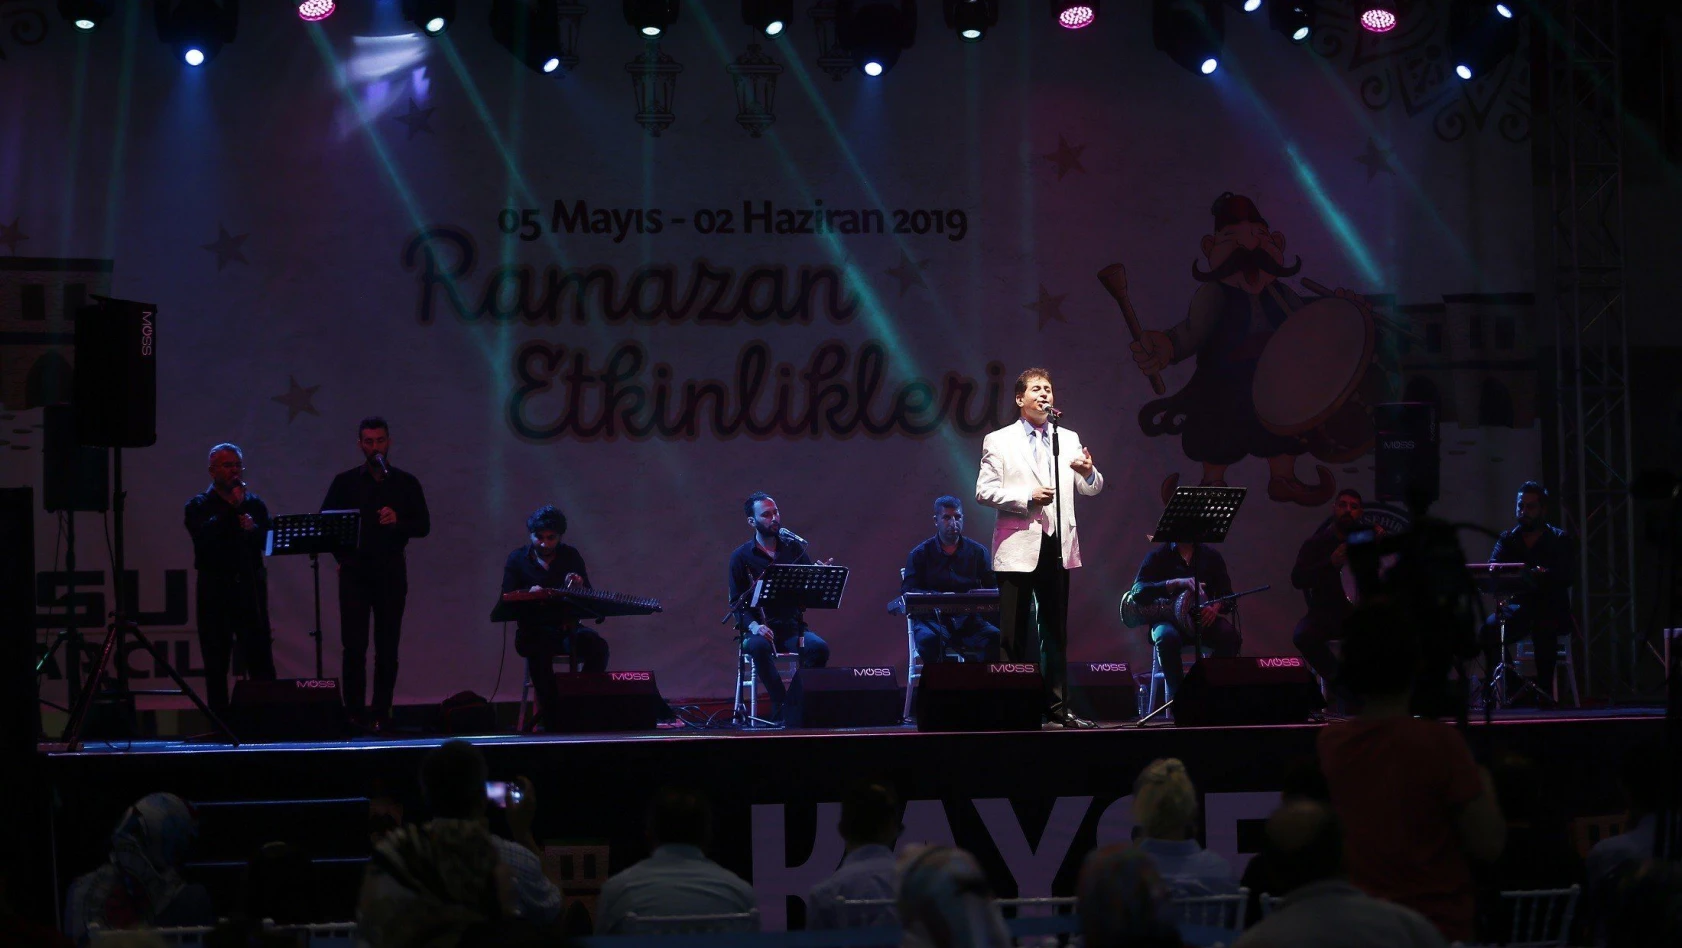 Ramazan etkinlikleri Mehmet Diker konseri ile devam etti